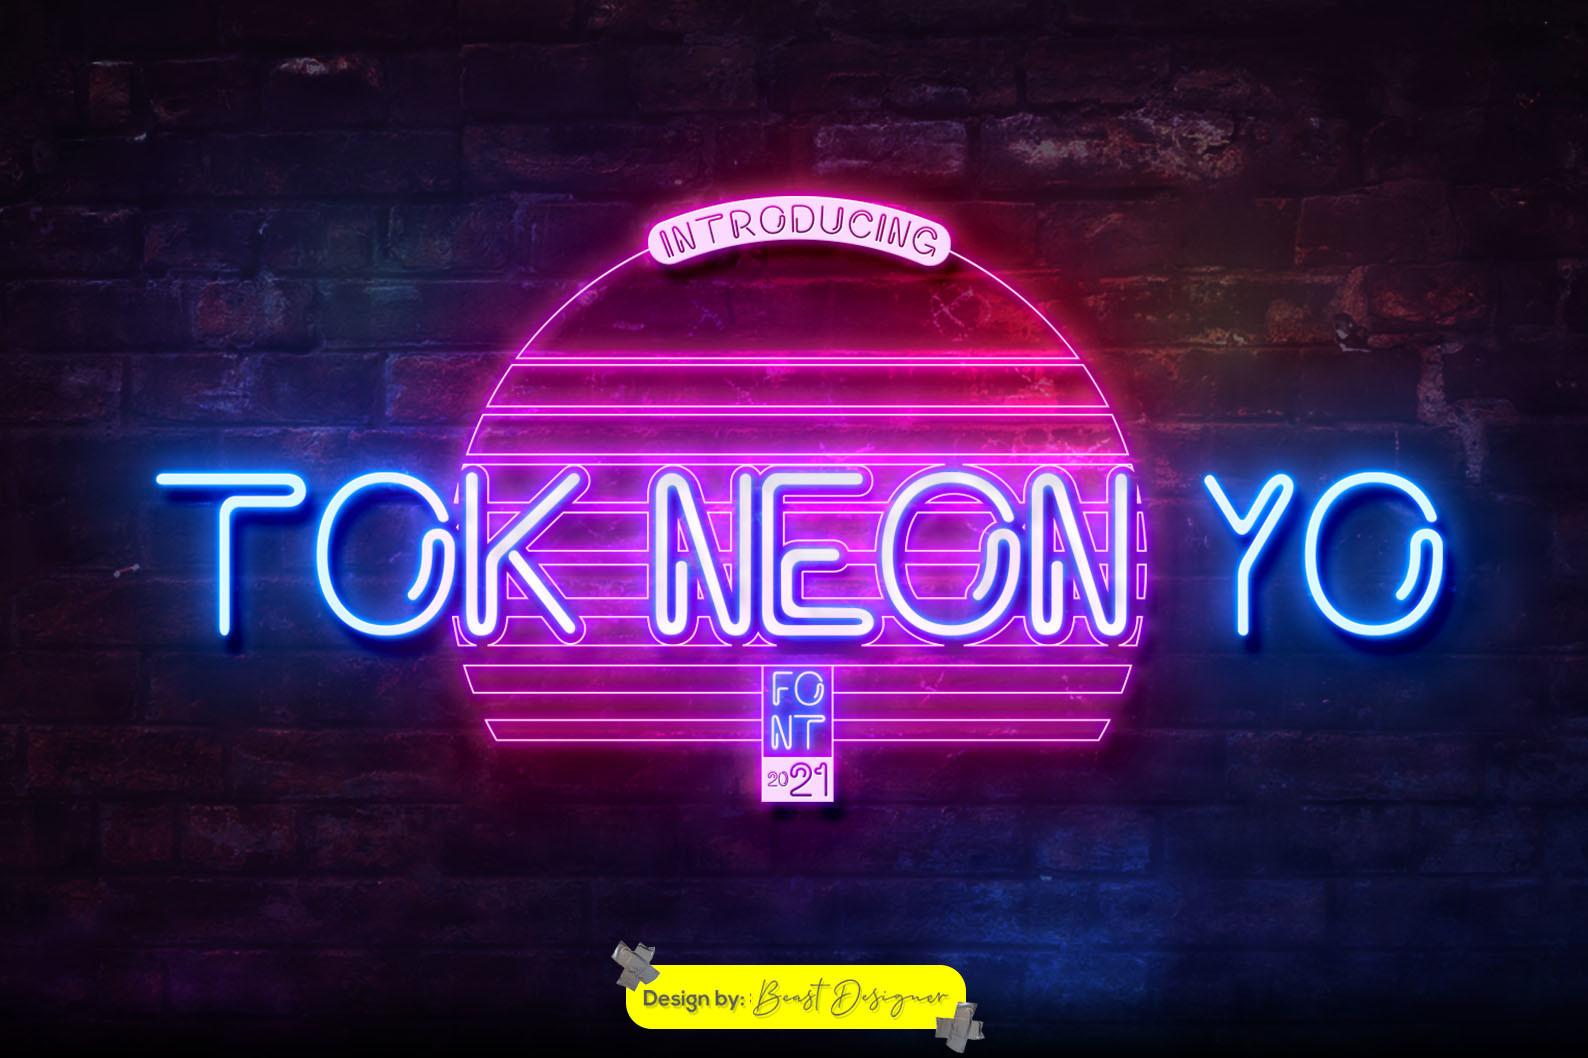 Tok Neon Yo Font